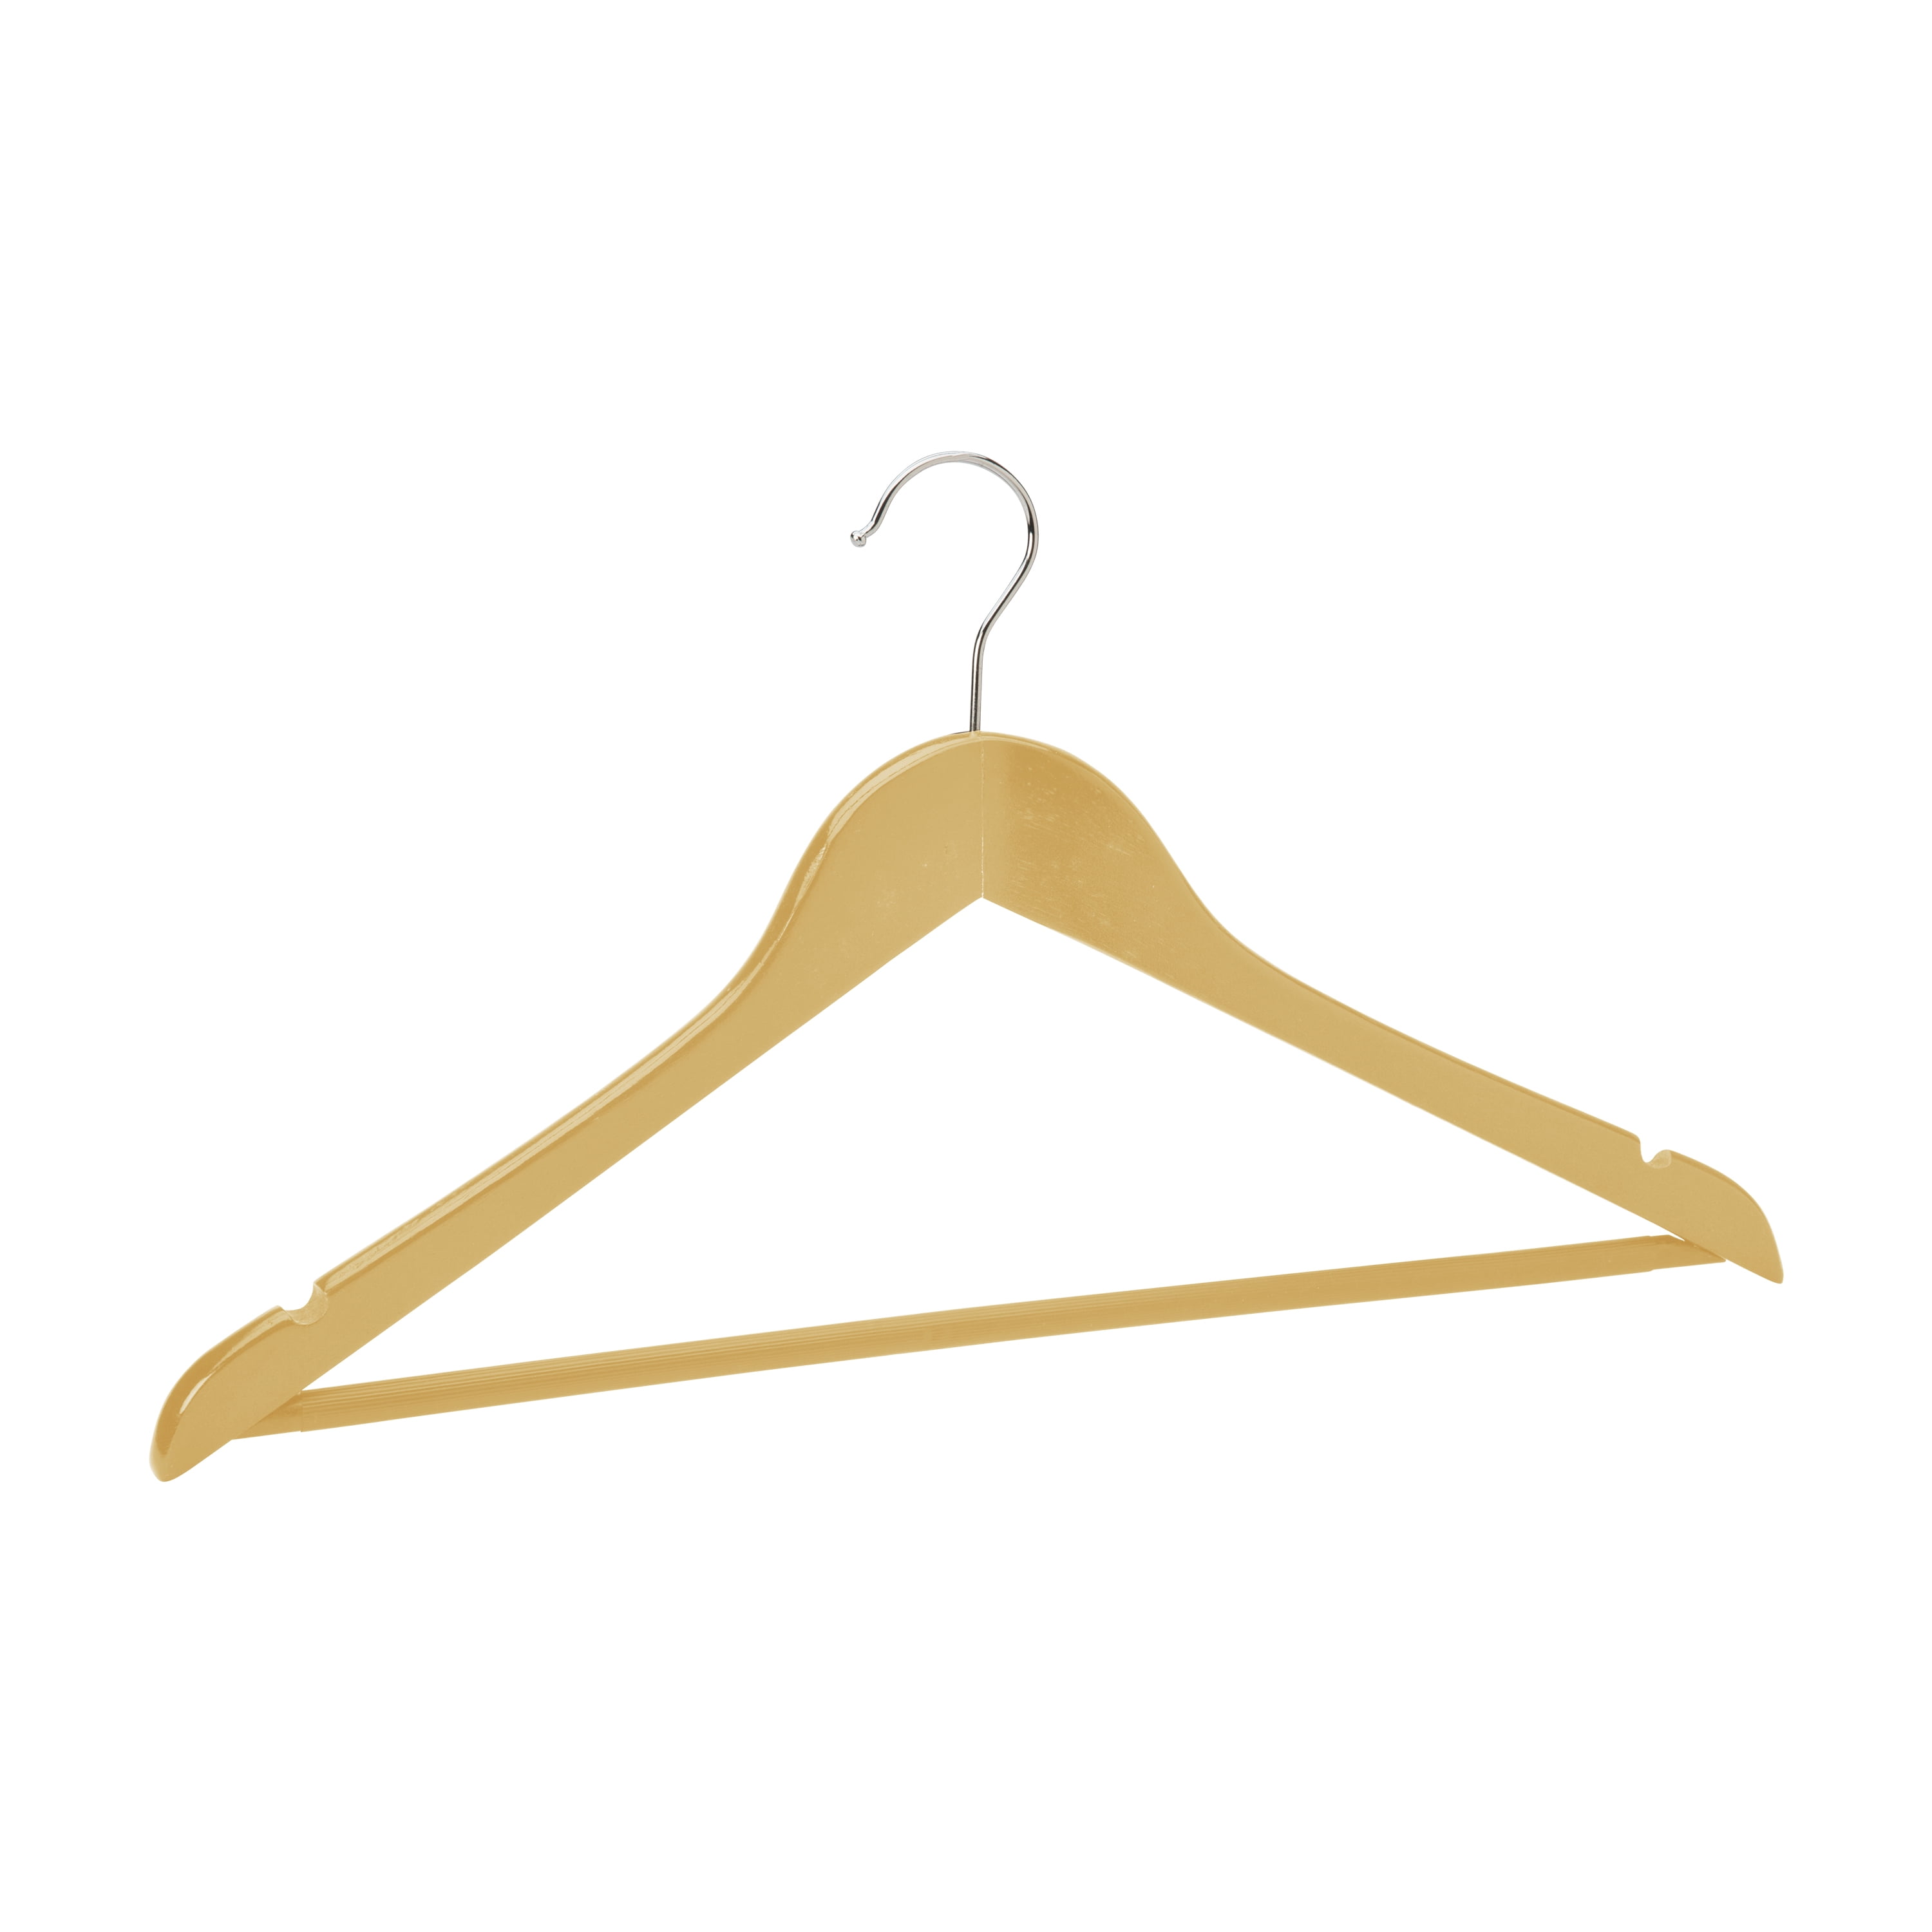 13 13G Children's Suit Hangers(Box of 500)(White) – 3 Hanger